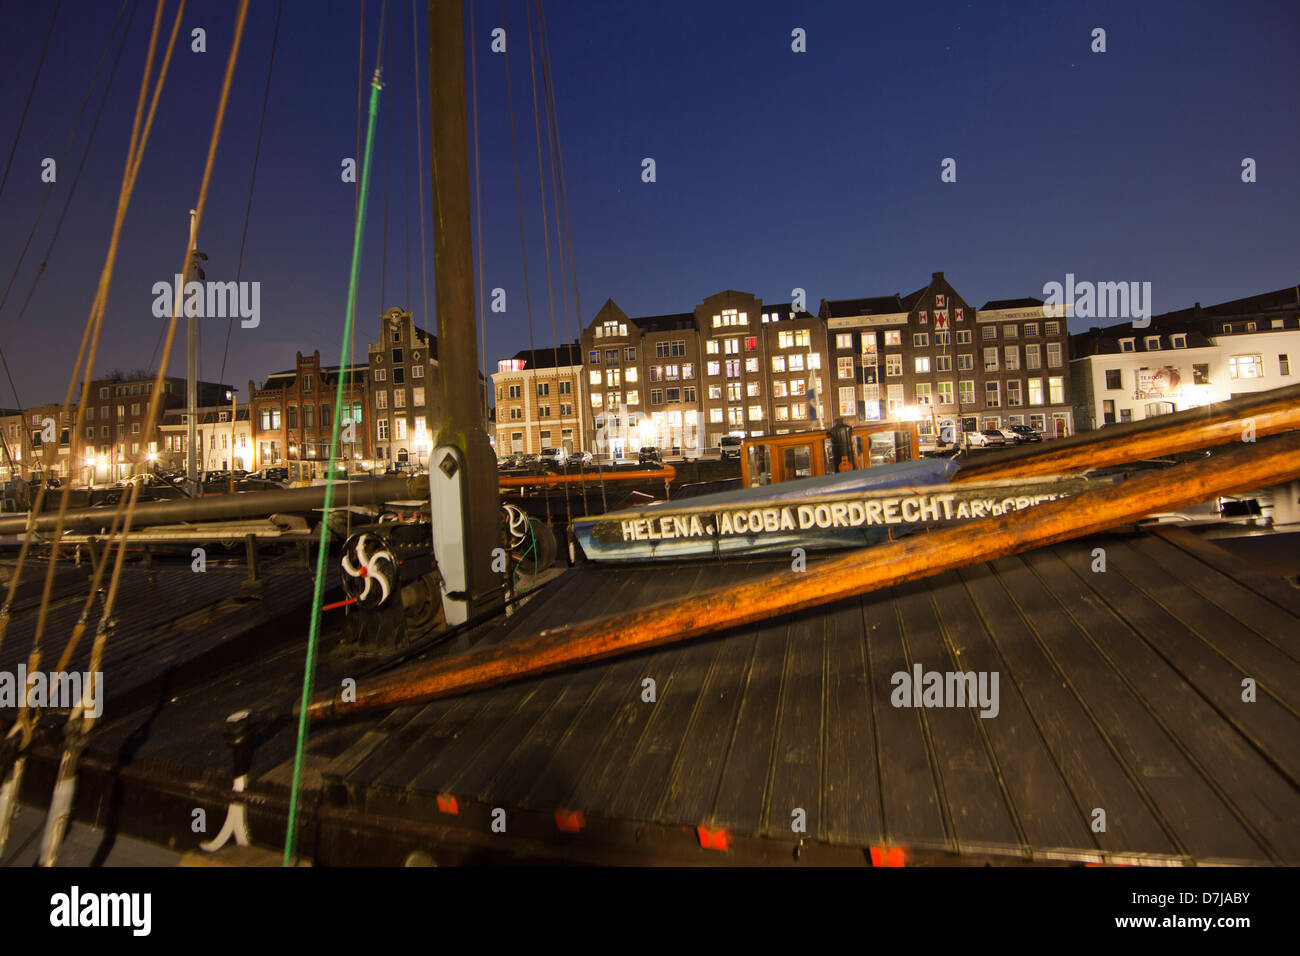 Le centre-ville de la vieille ville de Dordrecht, Pays-Bas Banque D'Images